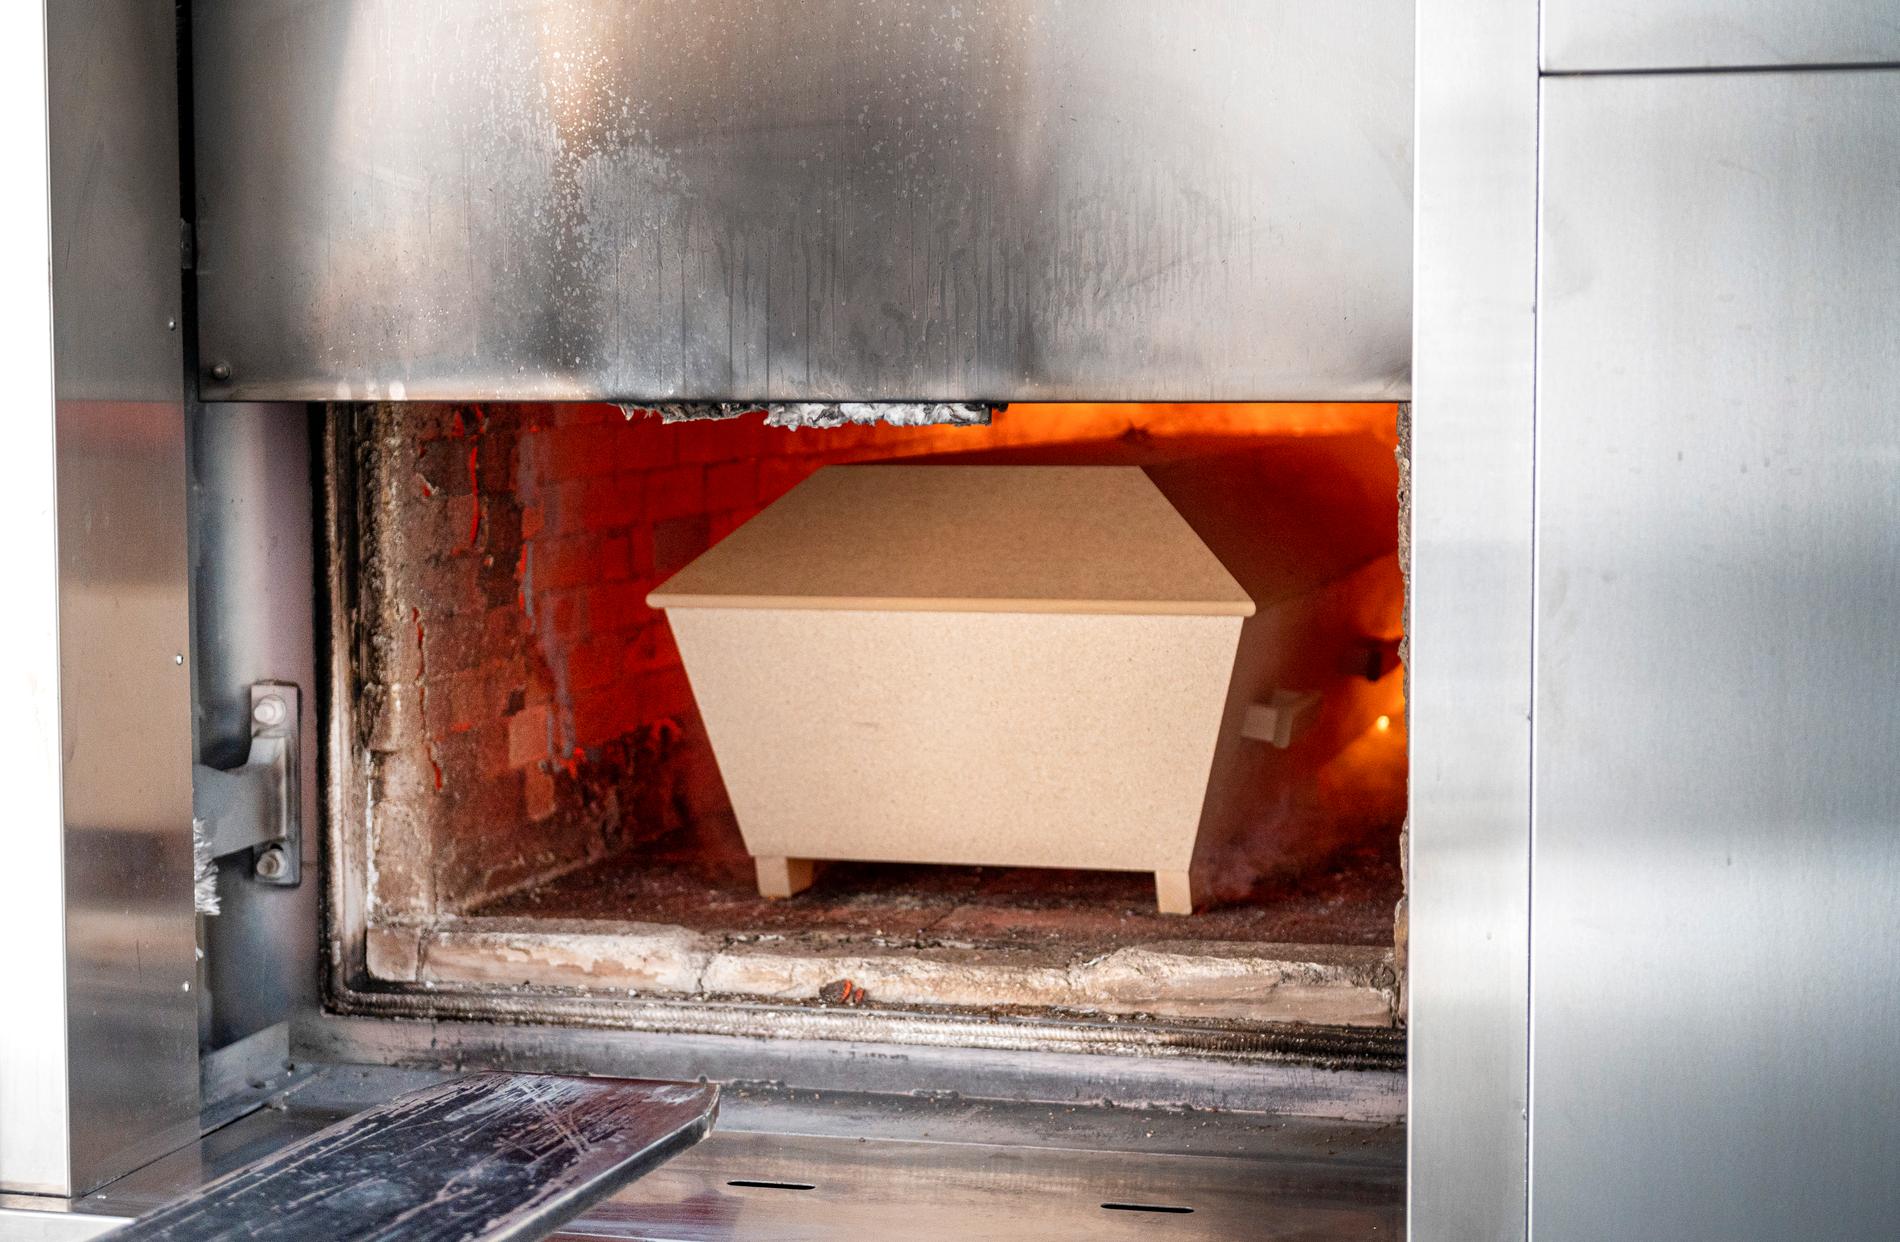 En kista förs in och bränns i ugnen.